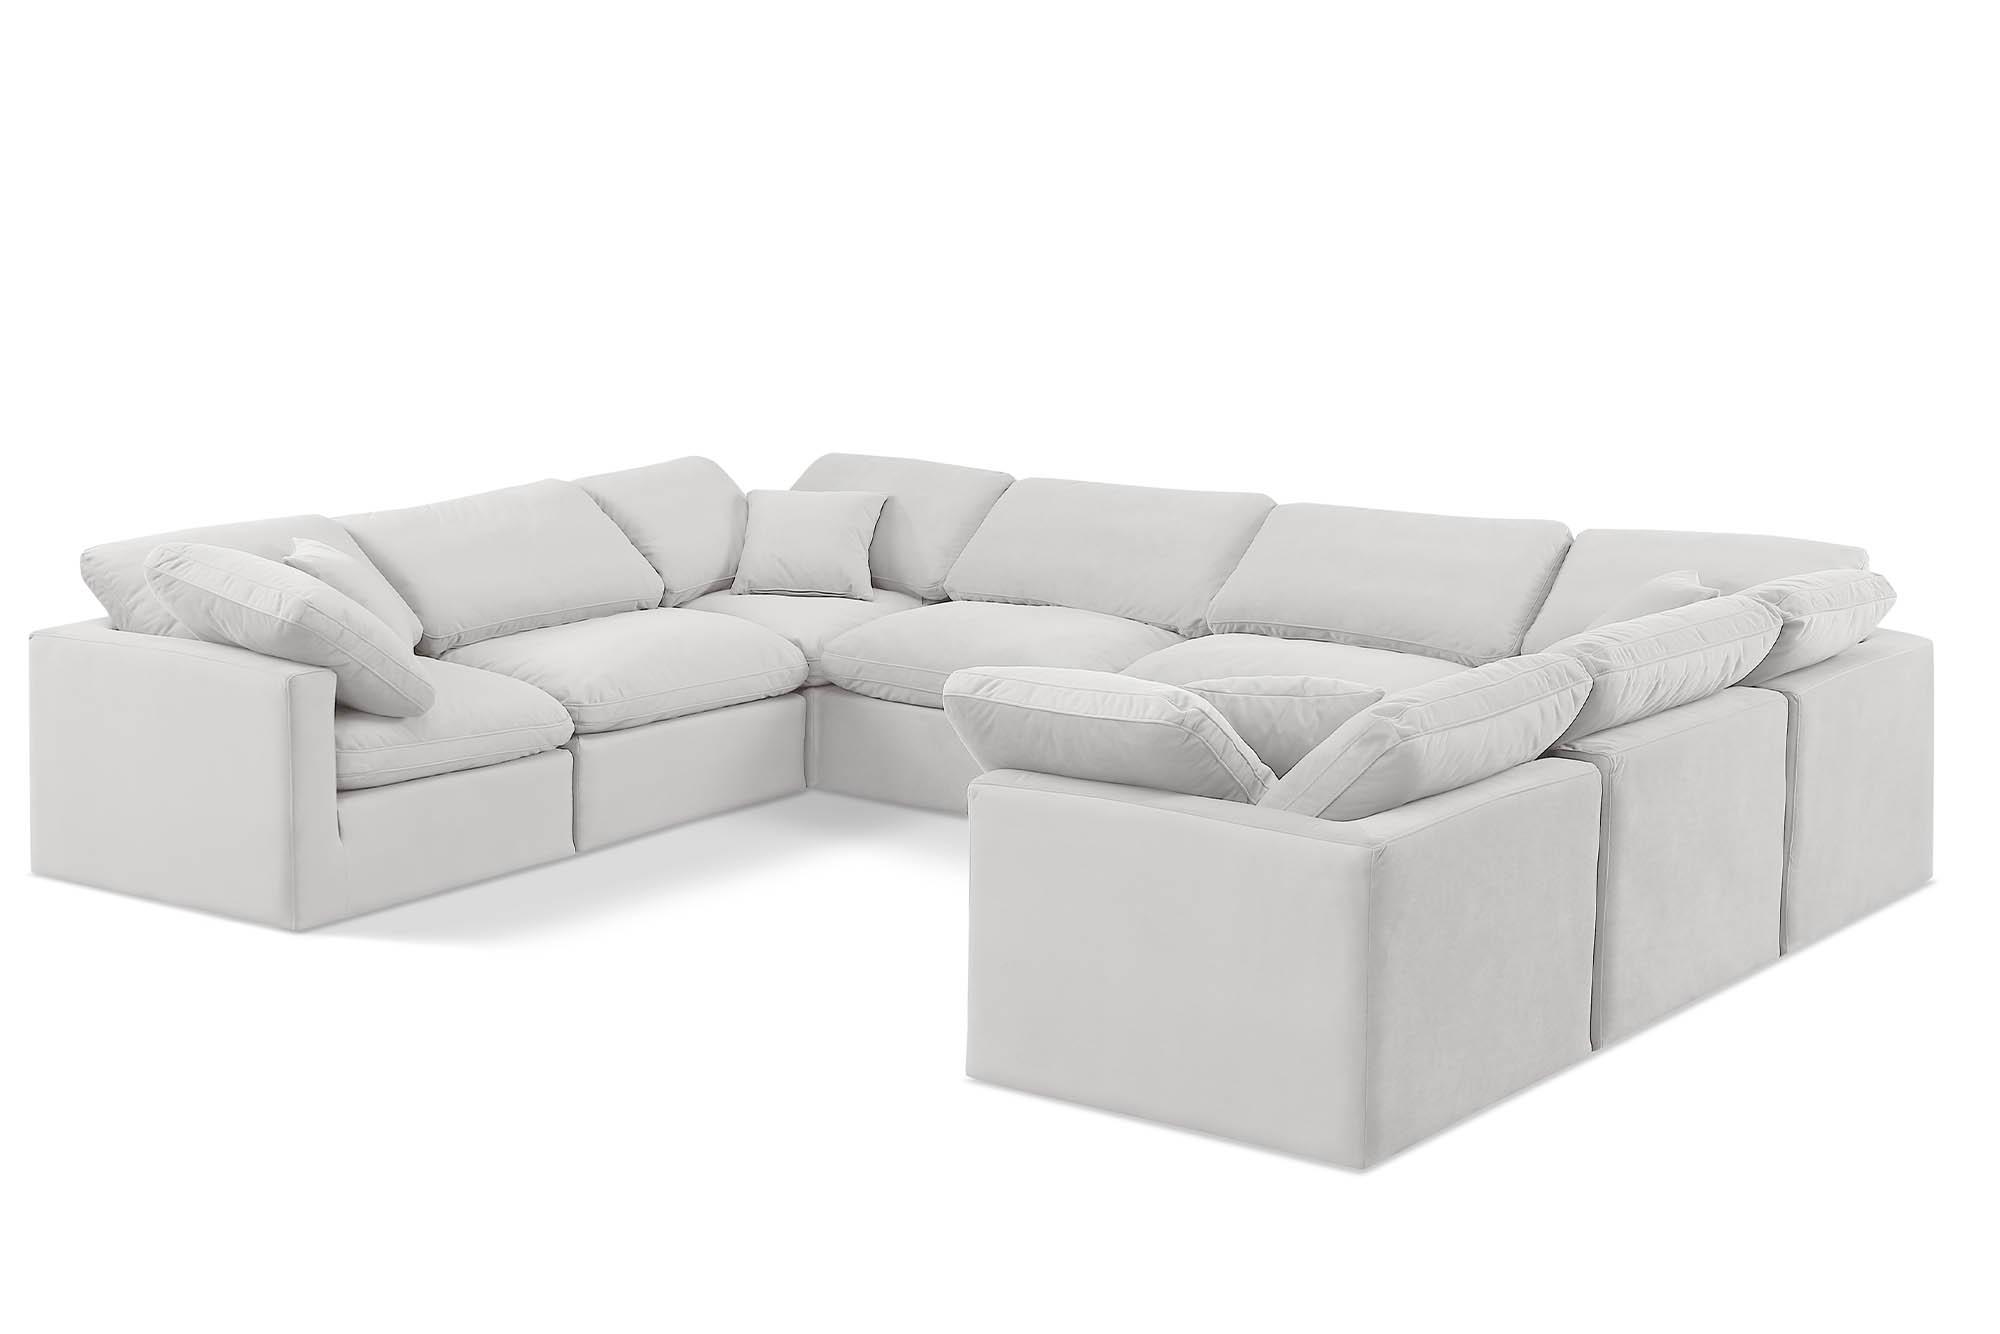 

    
Meridian Furniture INDULGE 147Cream-Sec8A Modular Sectional Sofa Cream 147Cream-Sec8A
